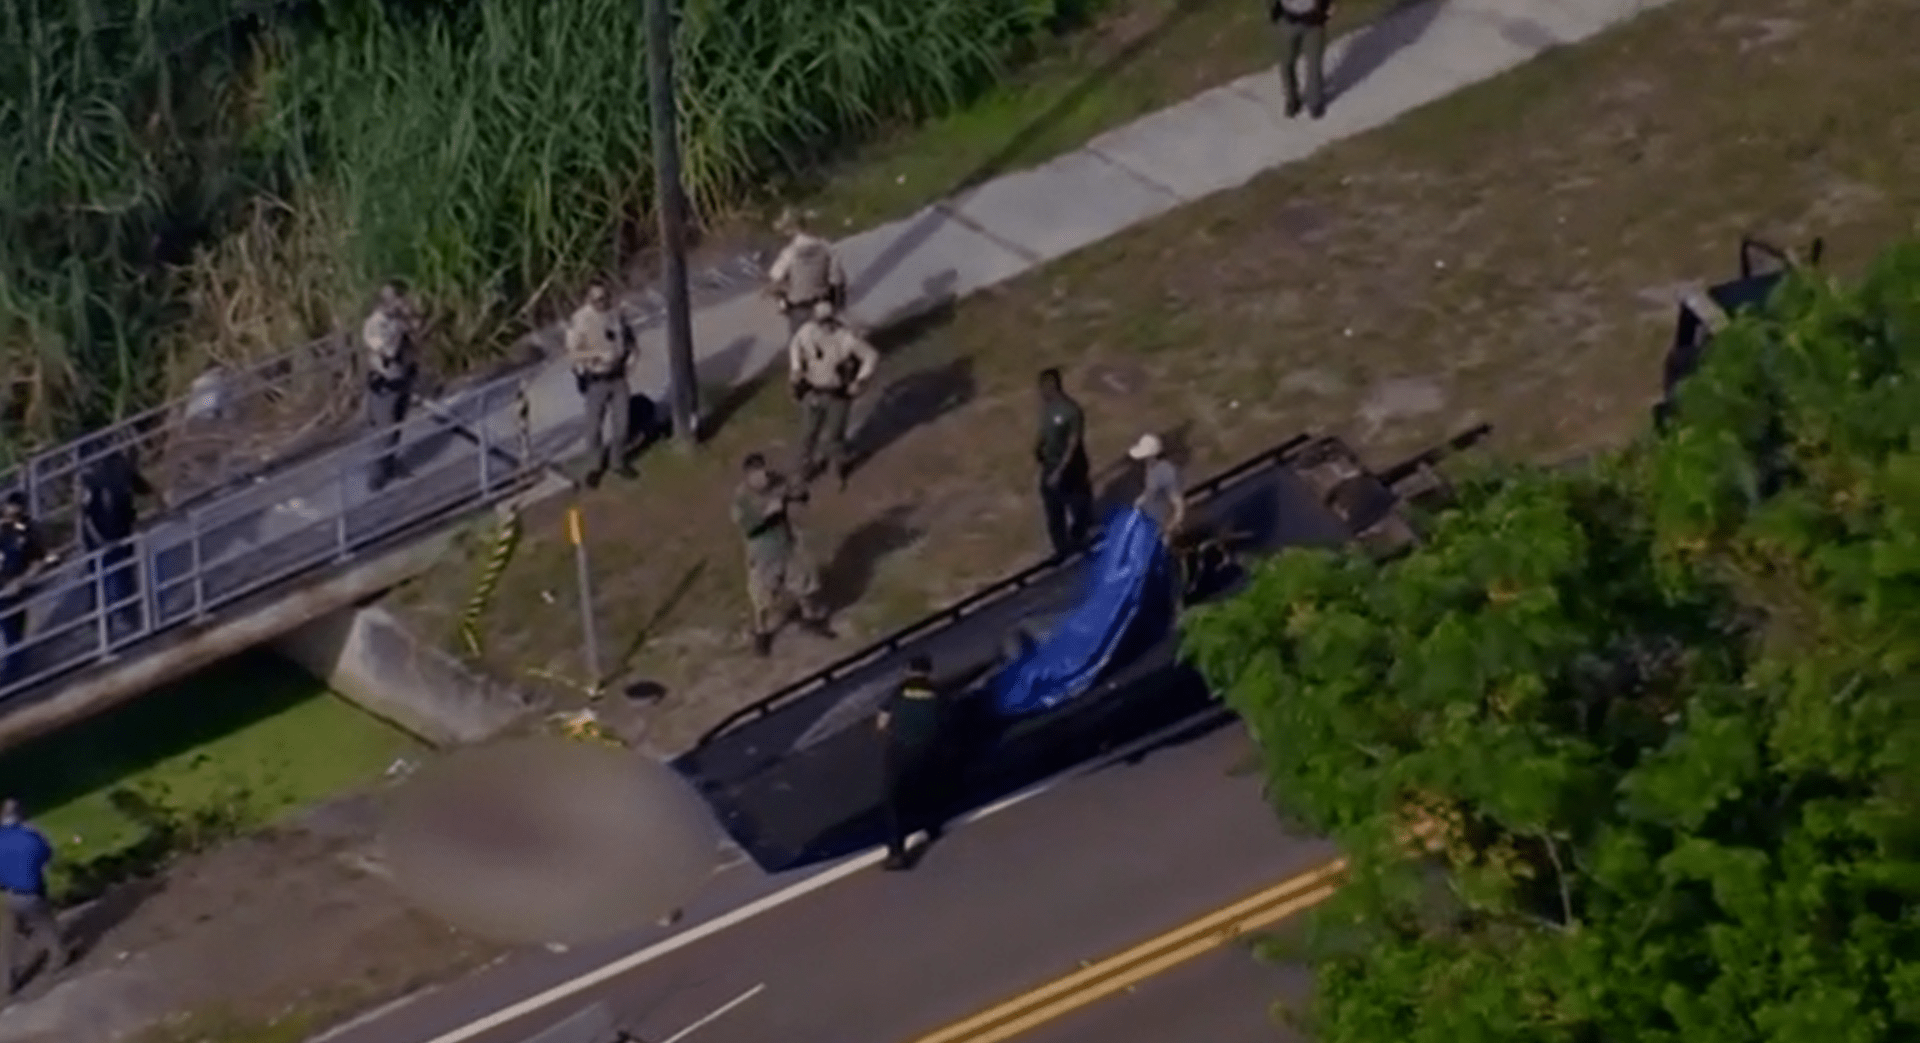 Aligátor na Floridě chodil po ulici s lidským tělem v tlamě.